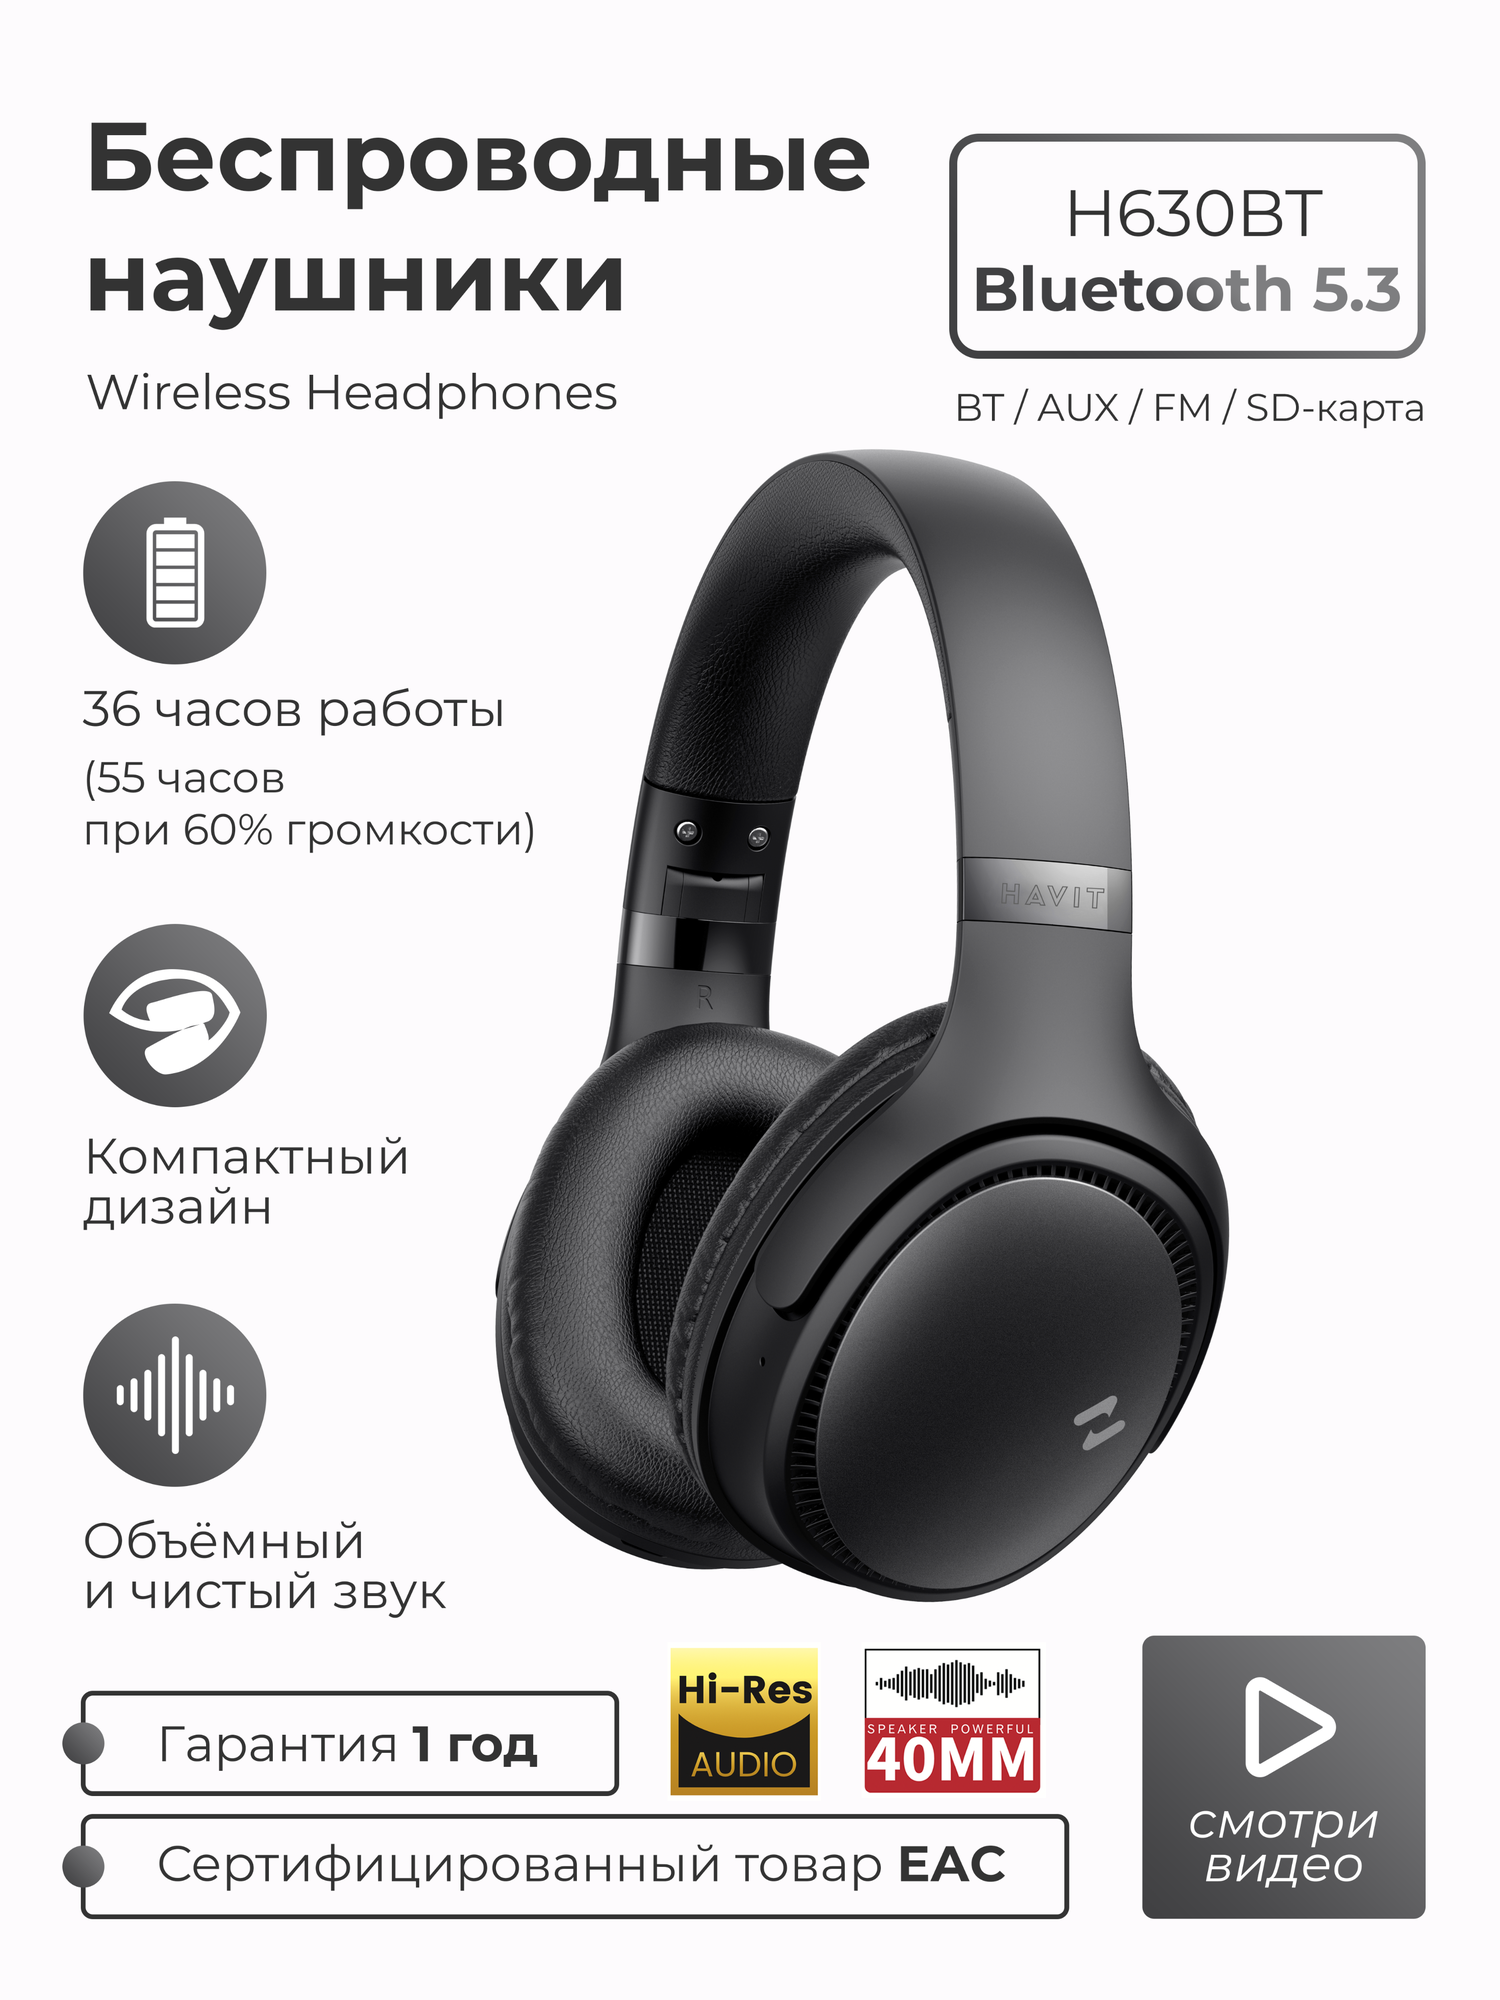 Беспроводные наушники полноразмерные большие SMART PRESENT Headphones H630bt с микрофоном и шумоподавлением для телефона и ПК, черные